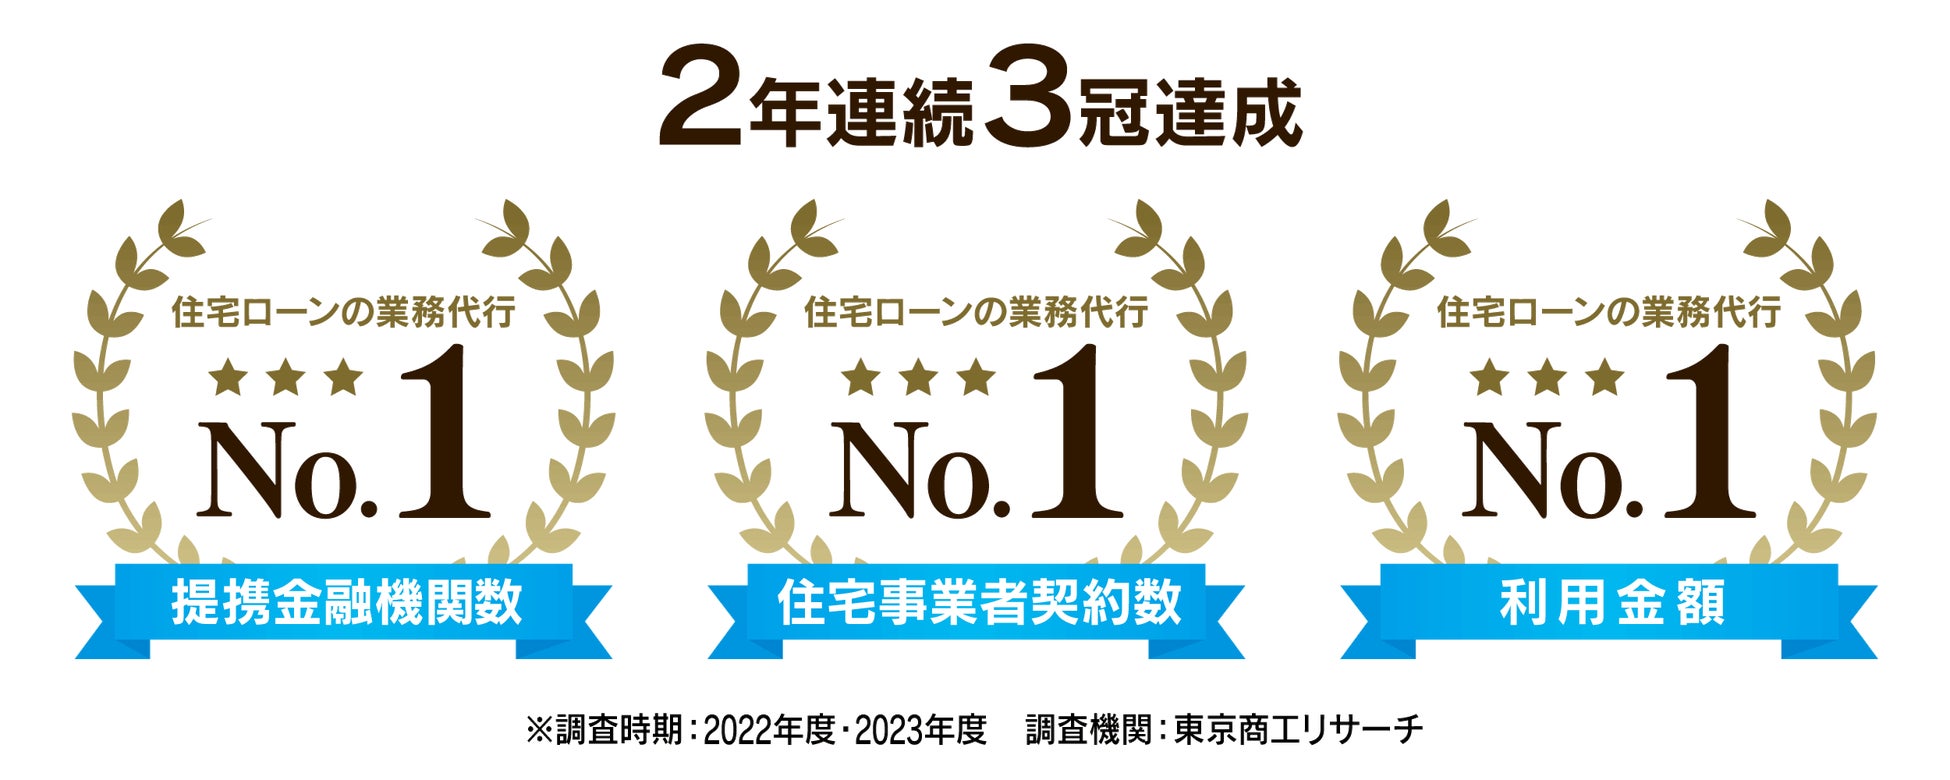 住宅ローンテックスタートアップiYell株式会社、日本経済新聞社による2023年の「NEXTユニコーン調査」において、全体で42位、フィンテック部門では5位に選出